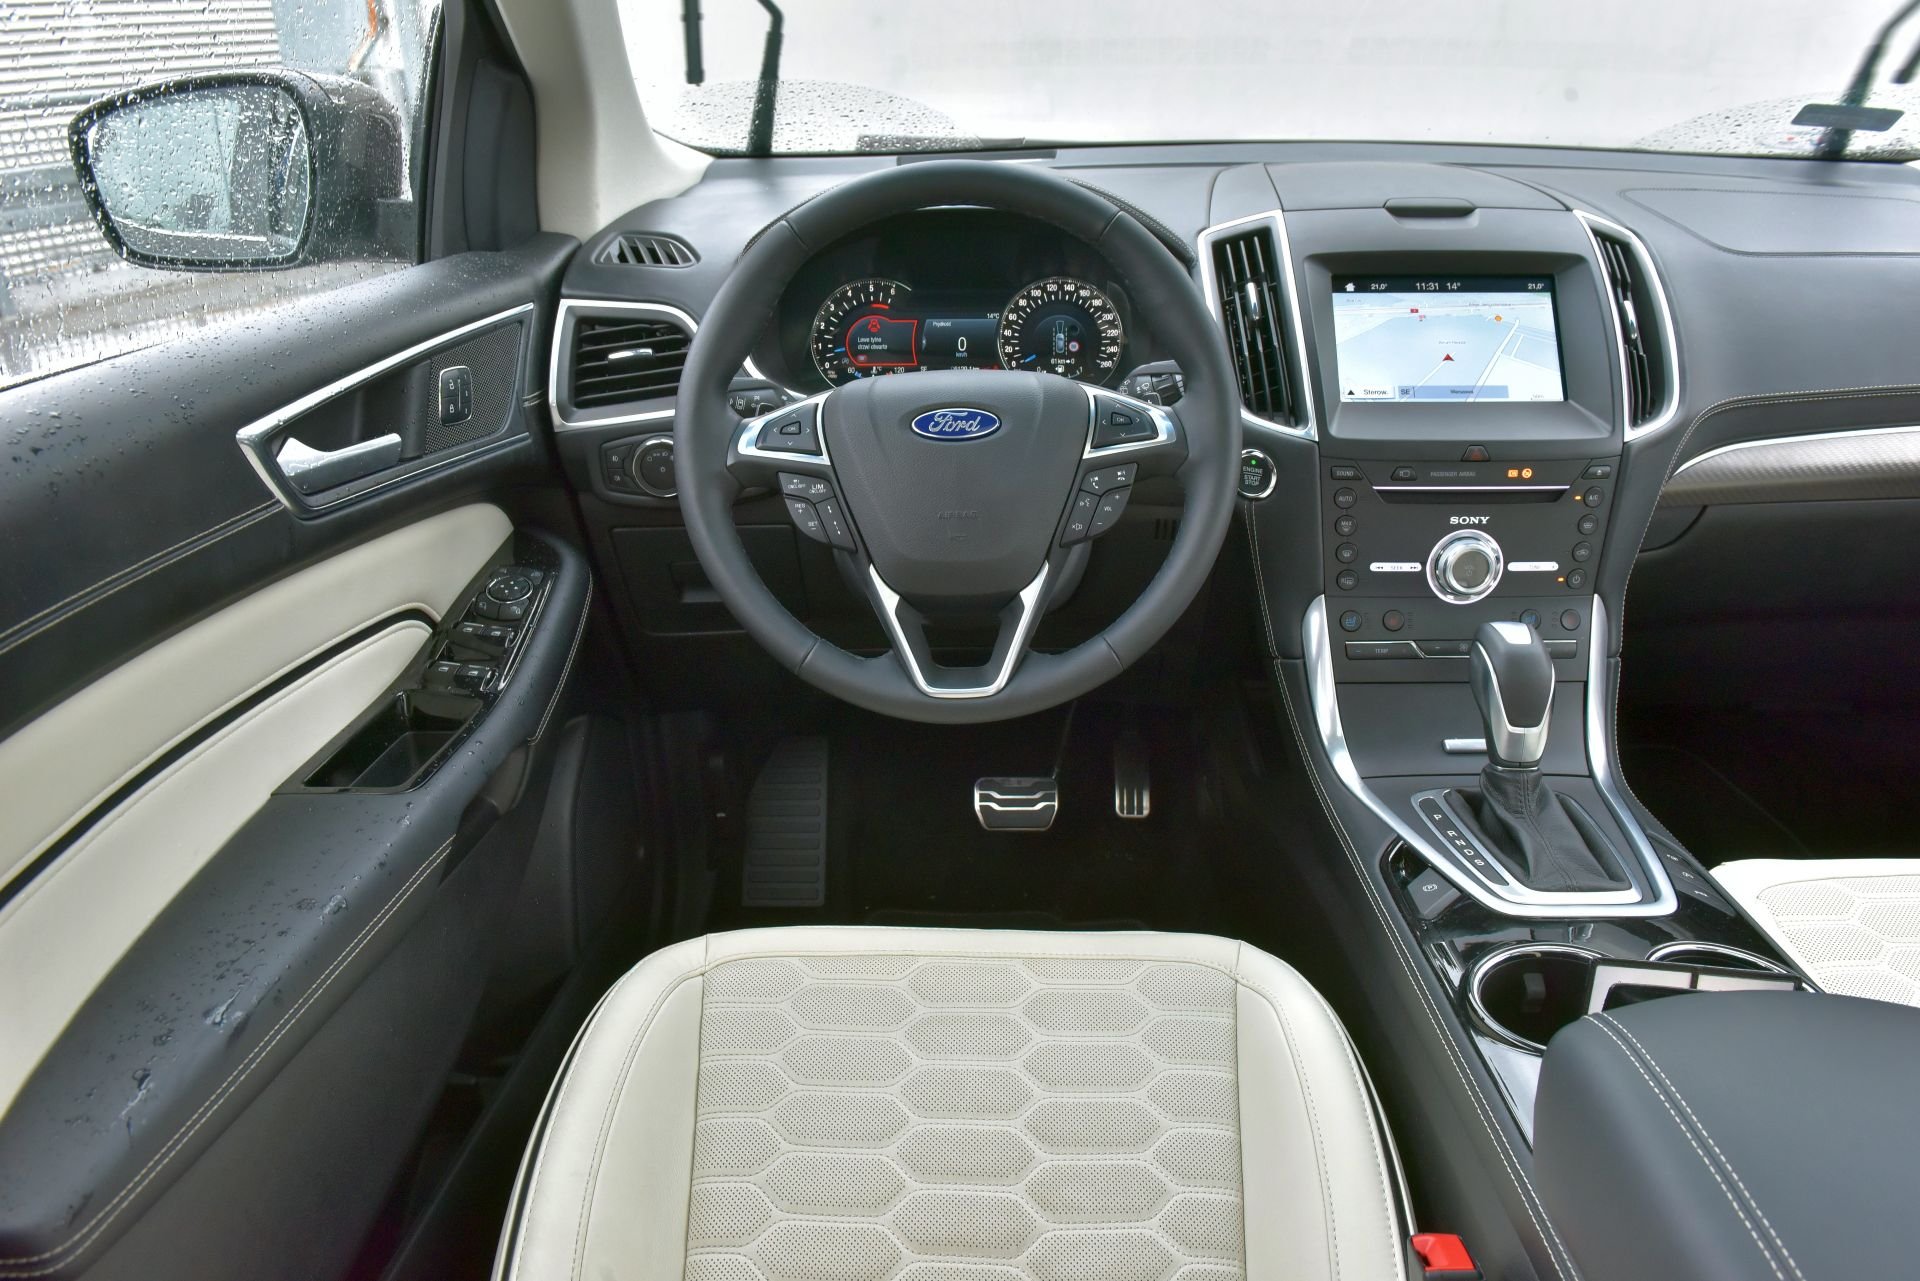 Ford Edge II - kokpit